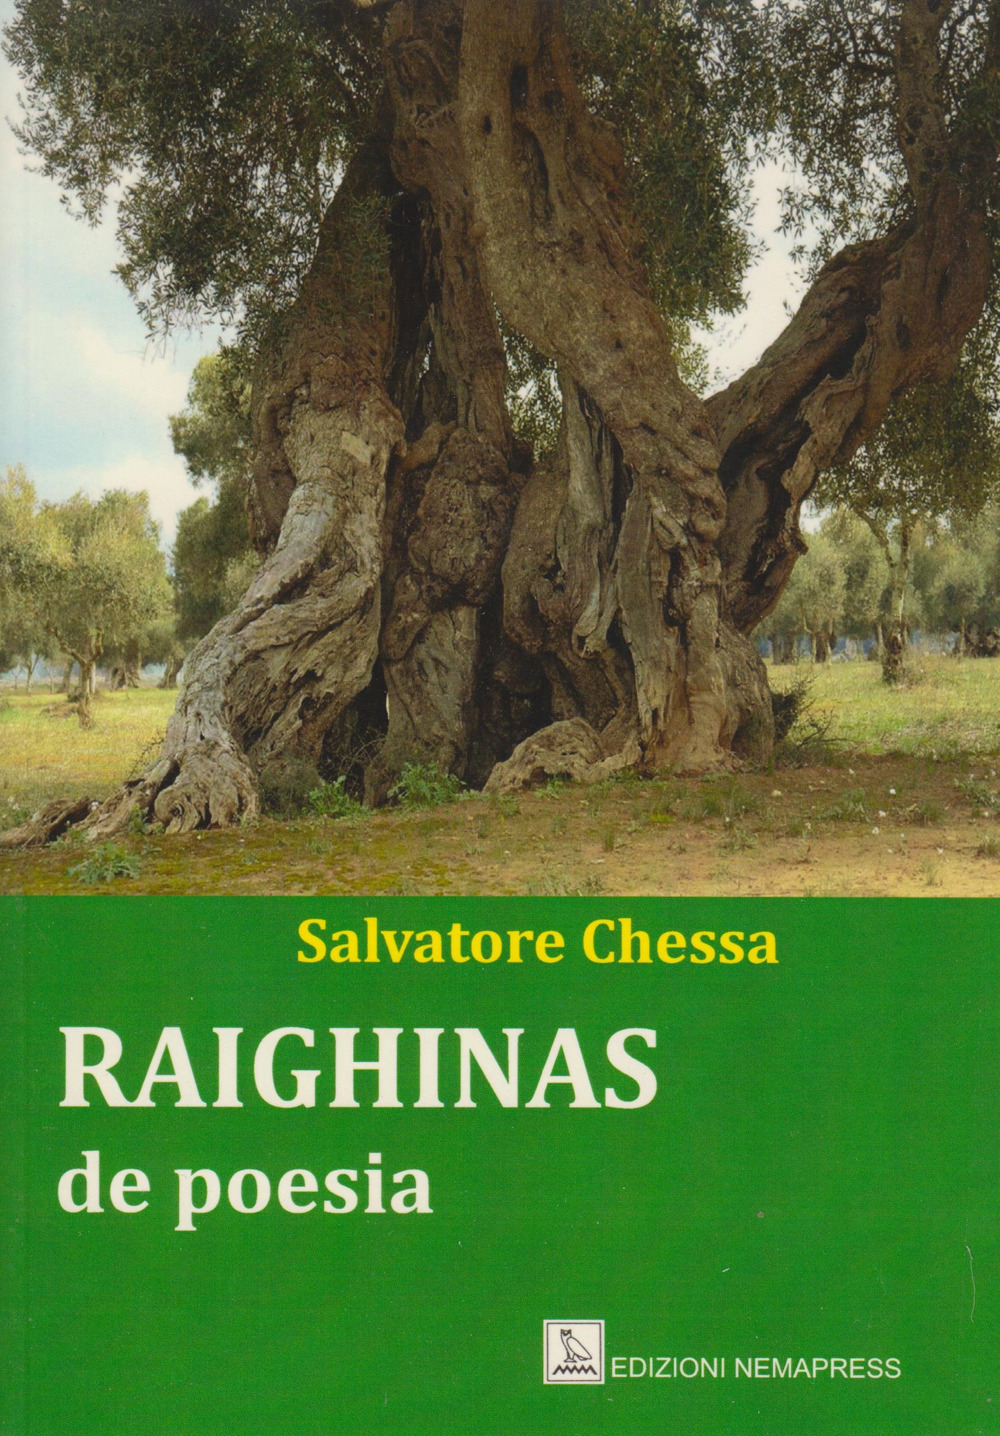 Image of Raighinas de poesia